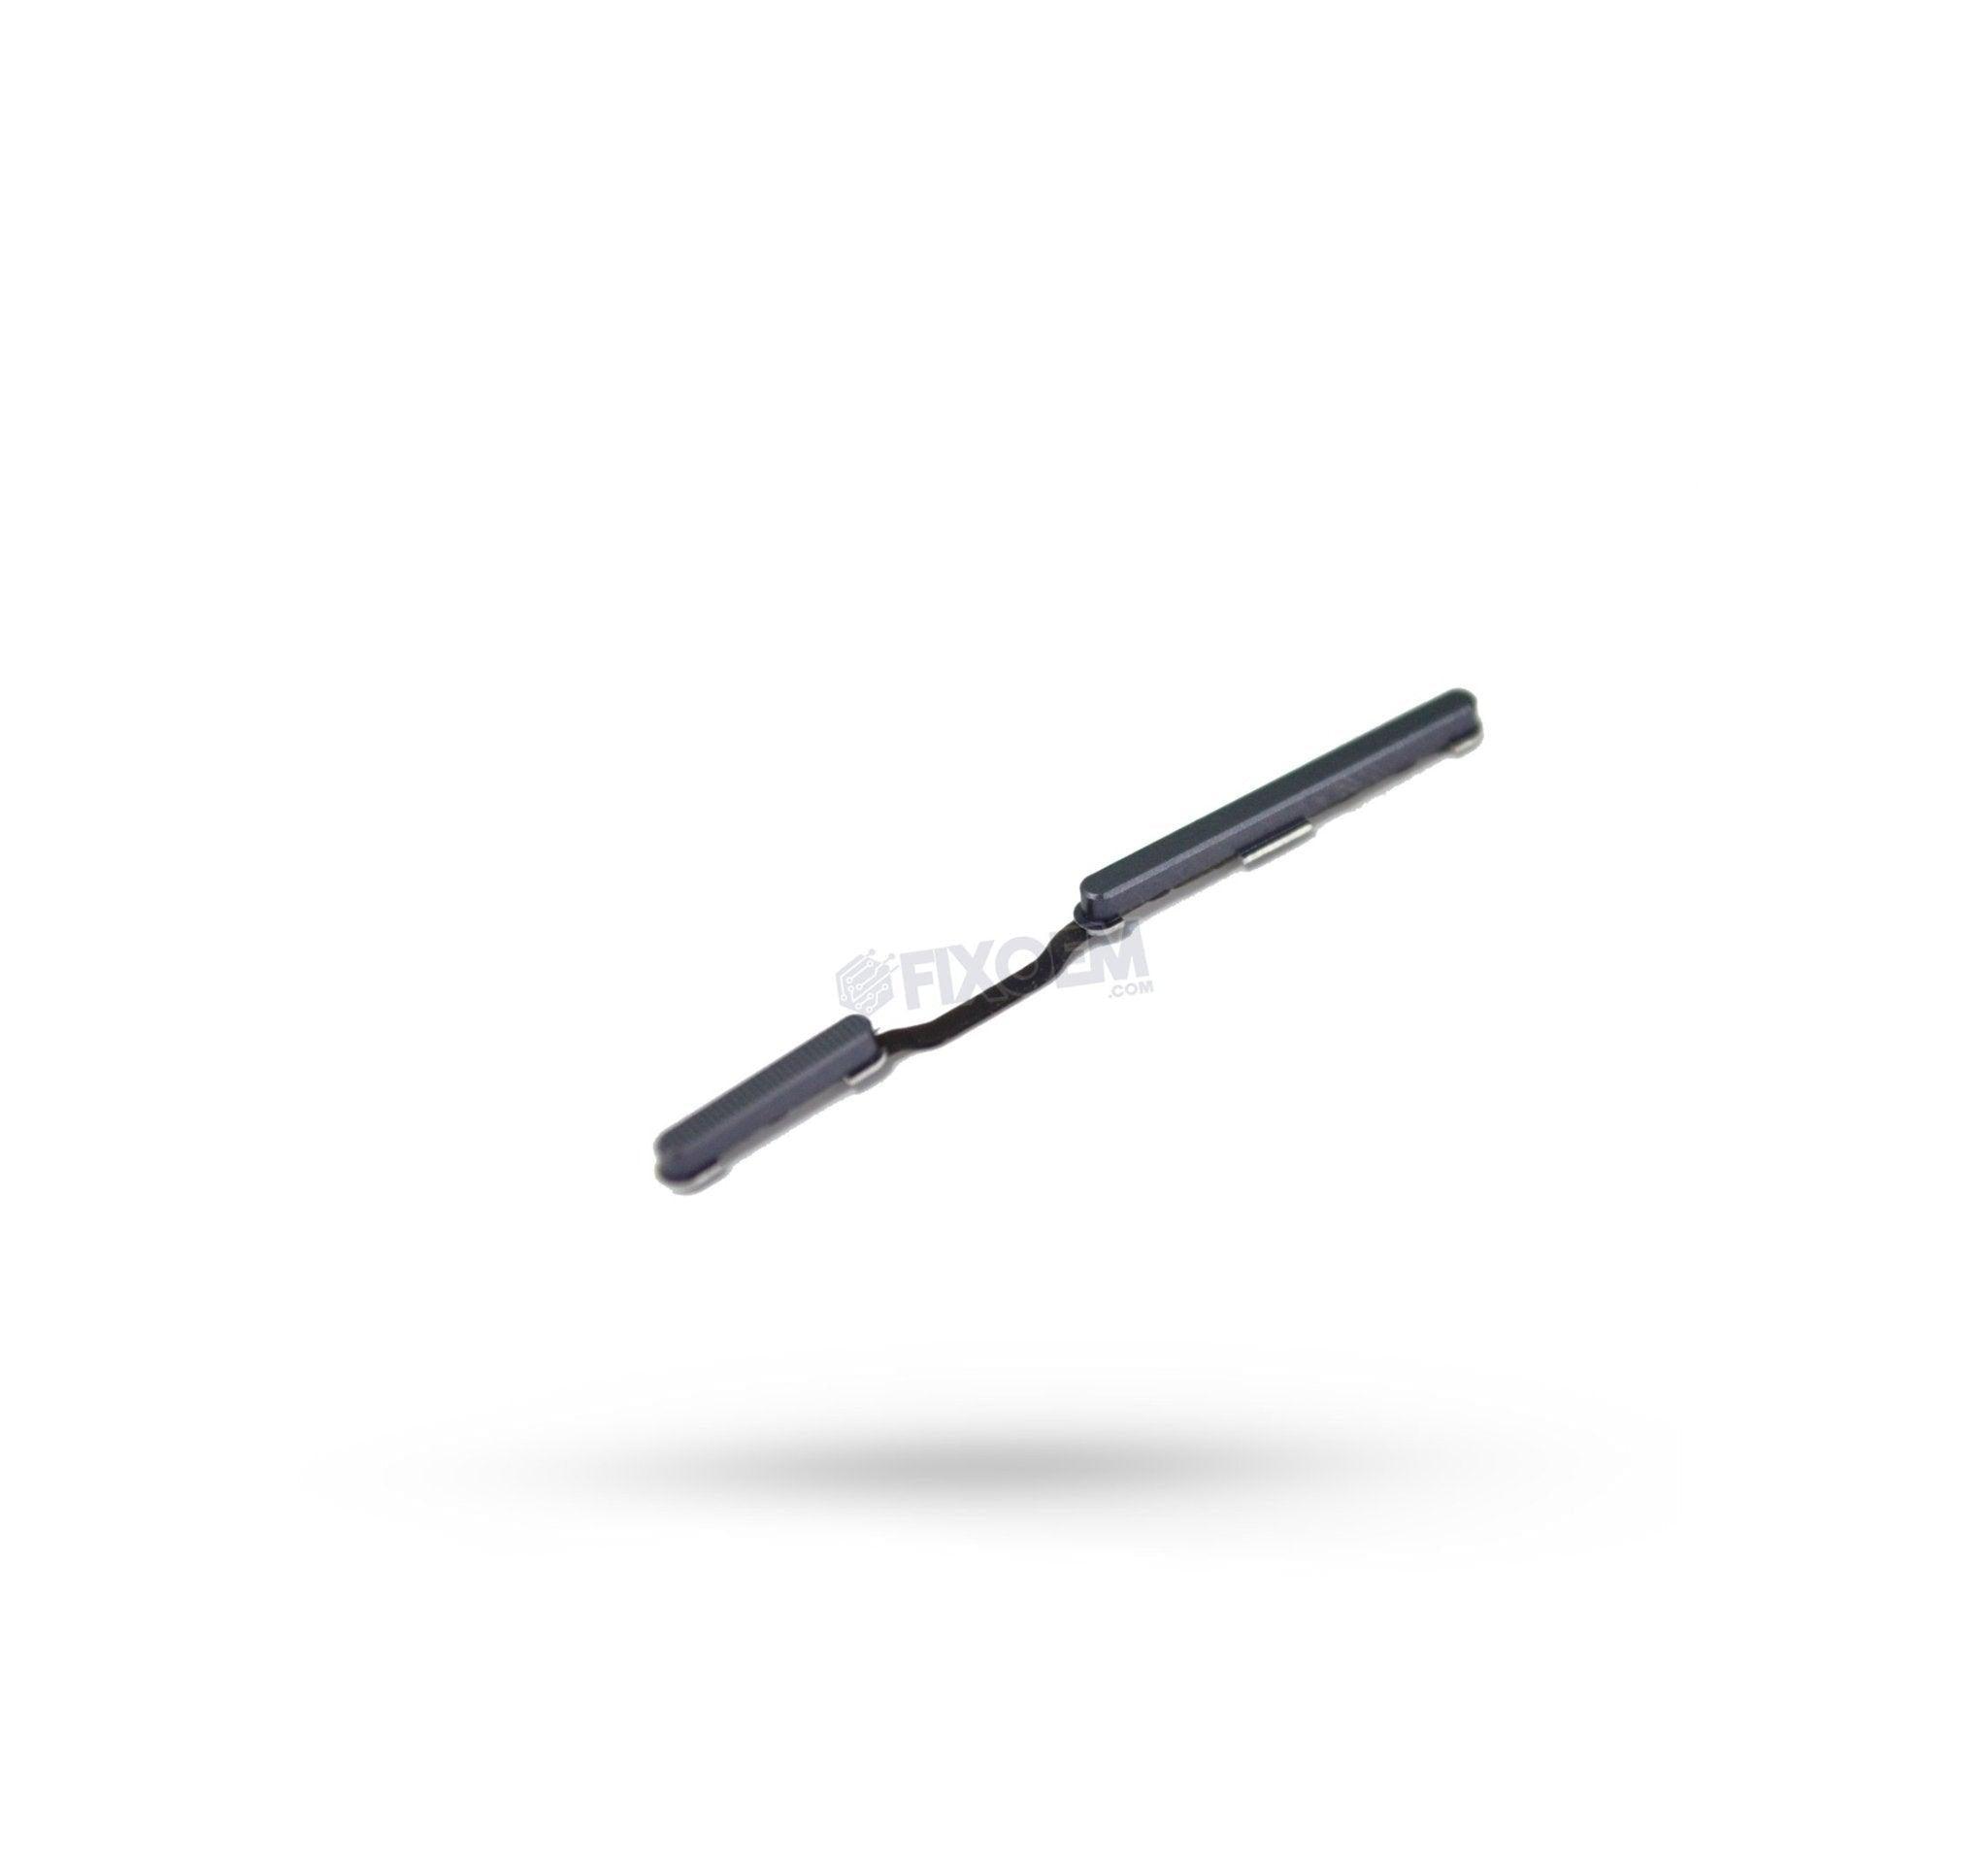 Boton Fisico Moto G5S Plus Negro Xt1803 a solo $ 50.00 Refaccion y puestos celulares, refurbish y microelectronica.- FixOEM